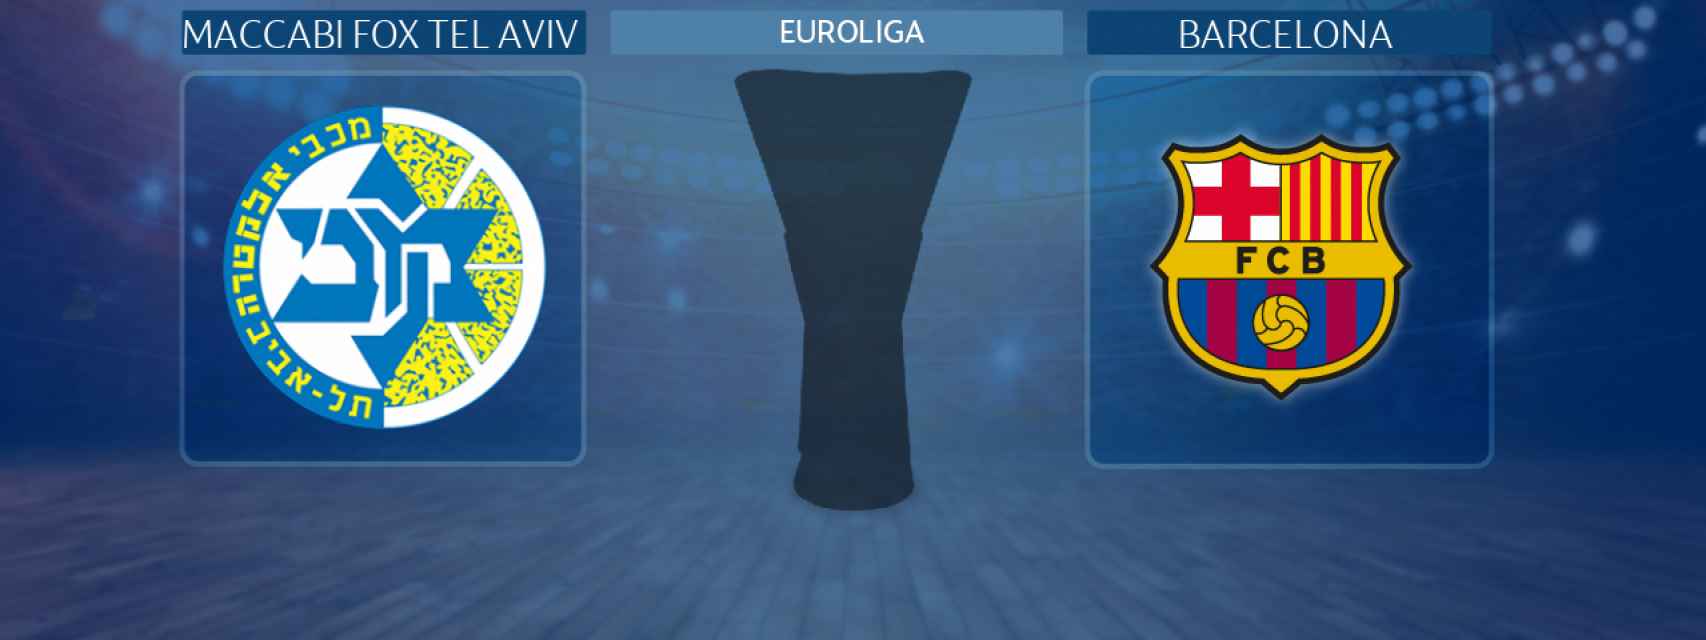 Maccabi Fox Tel Aviv - Barcelona, partido de la Euroliga